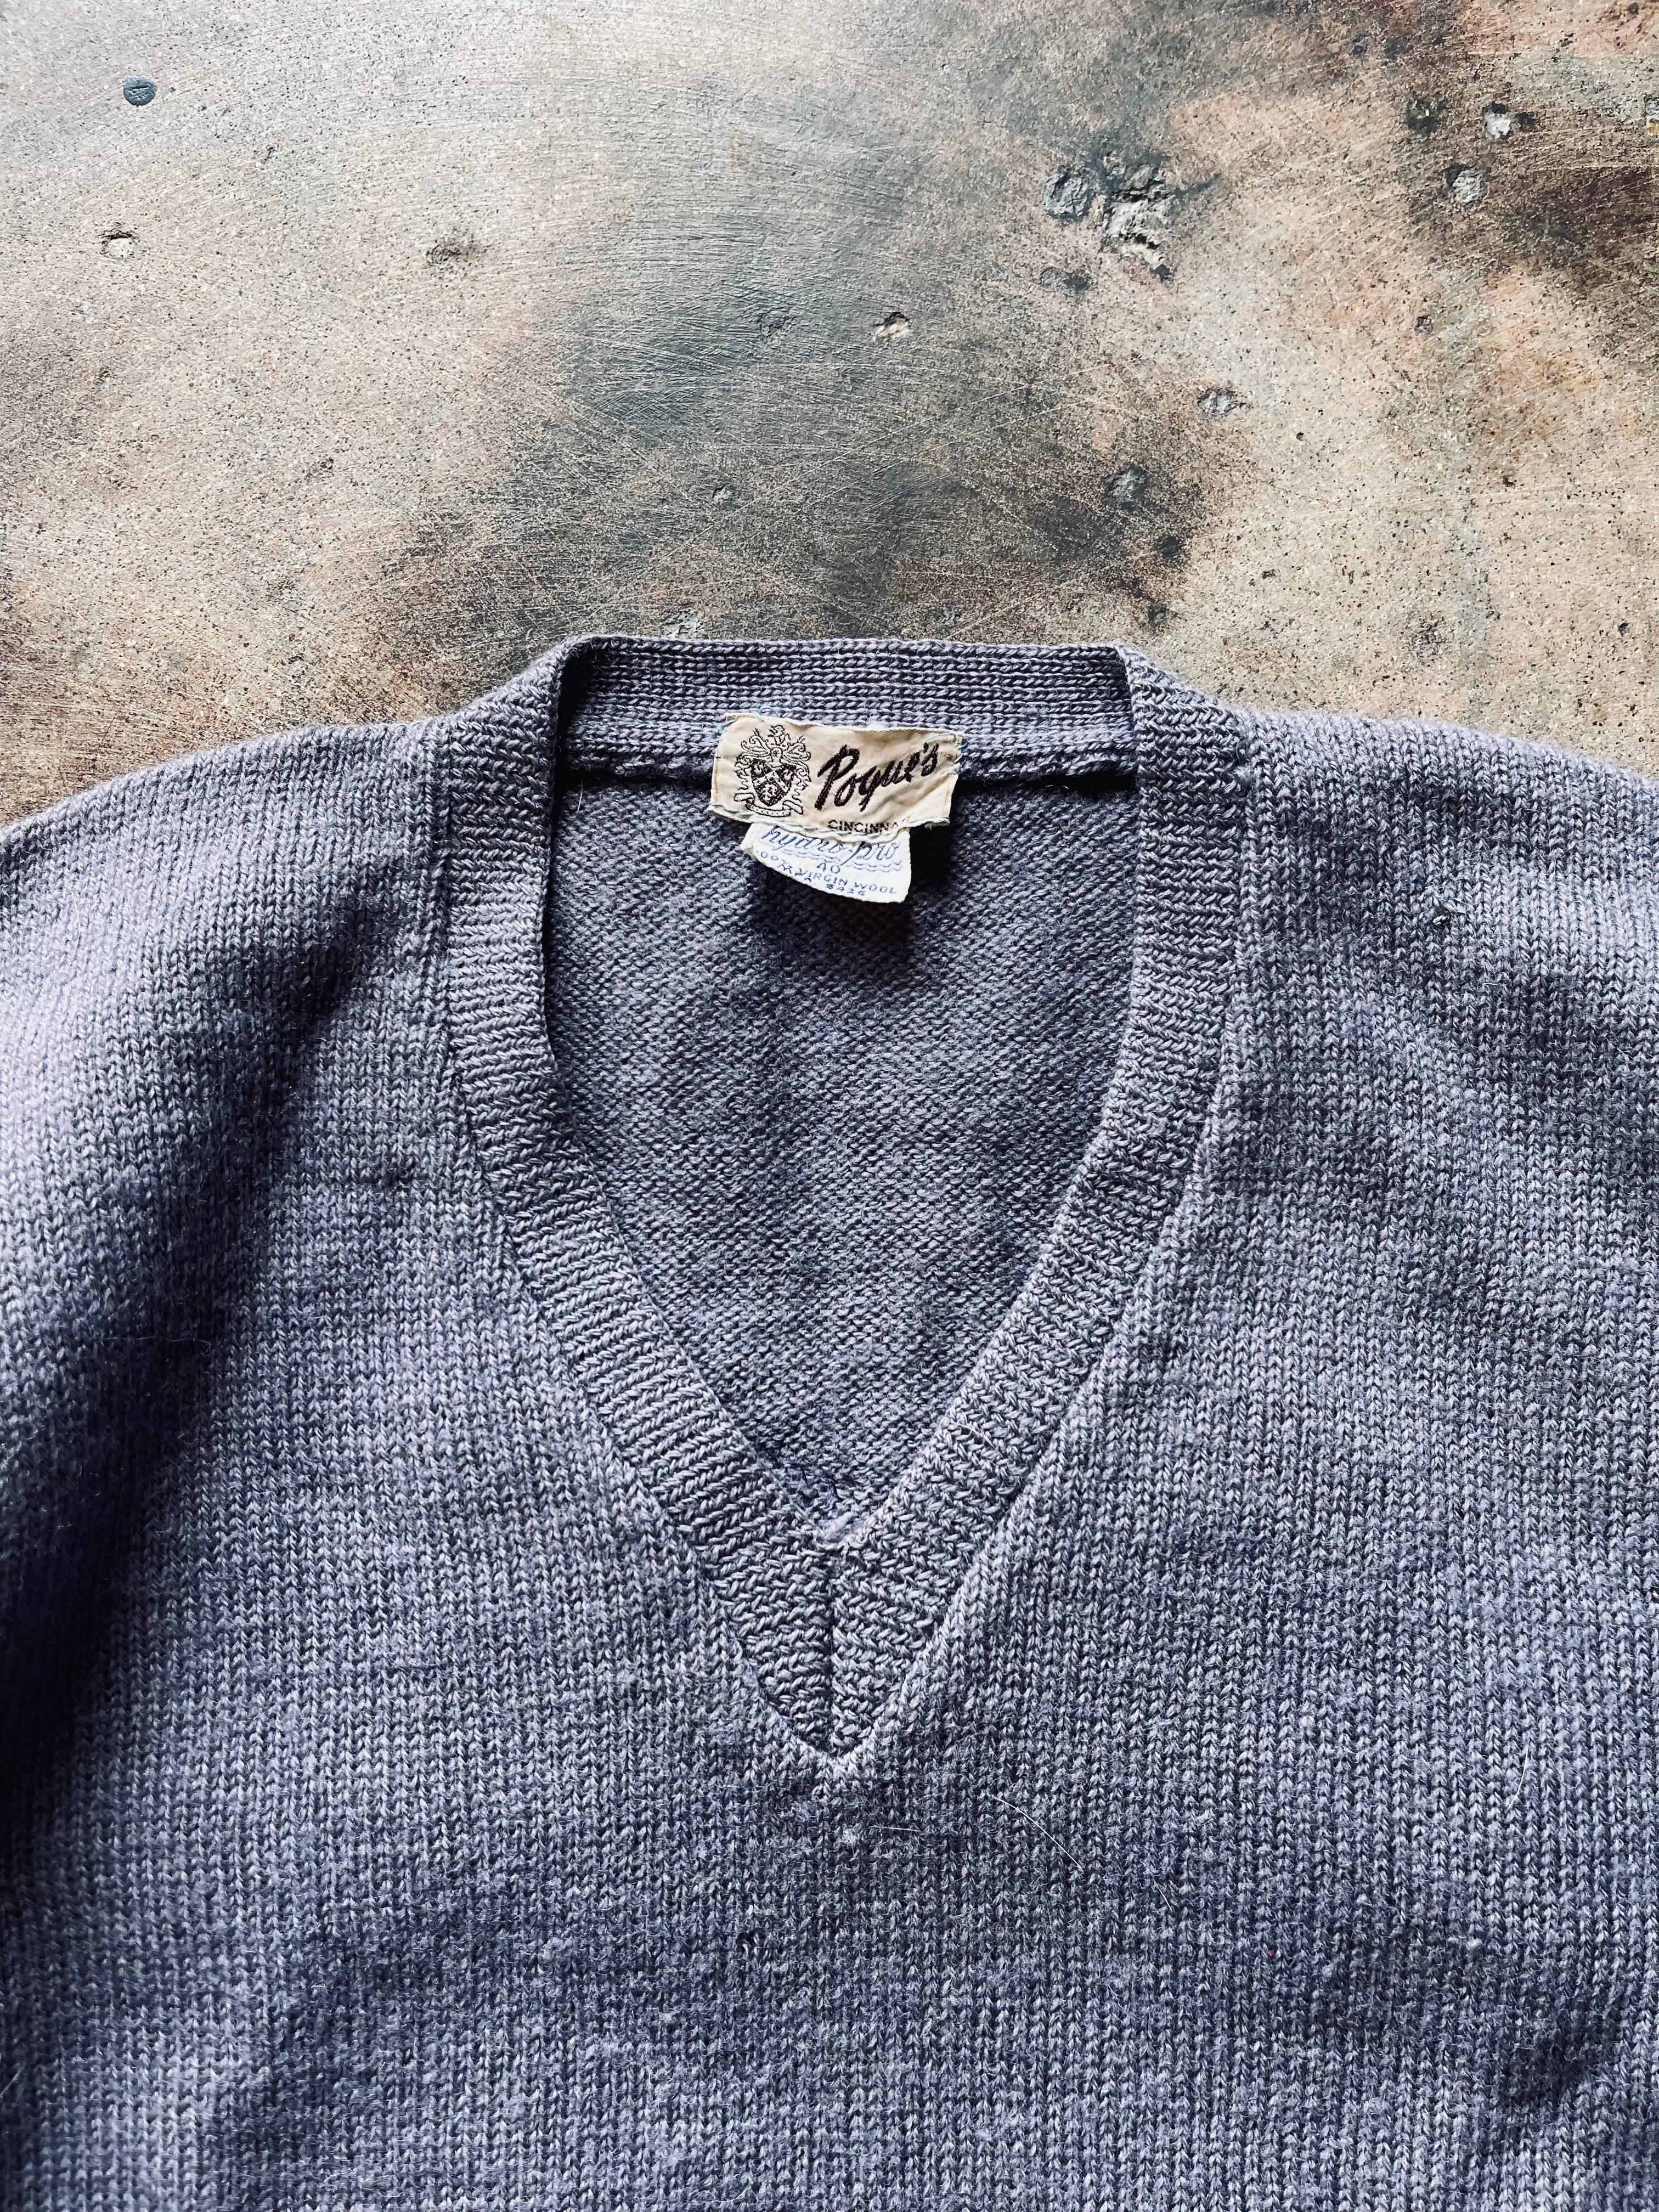 1940’s/50’s Poque’s V-Neck School Sweater | 40